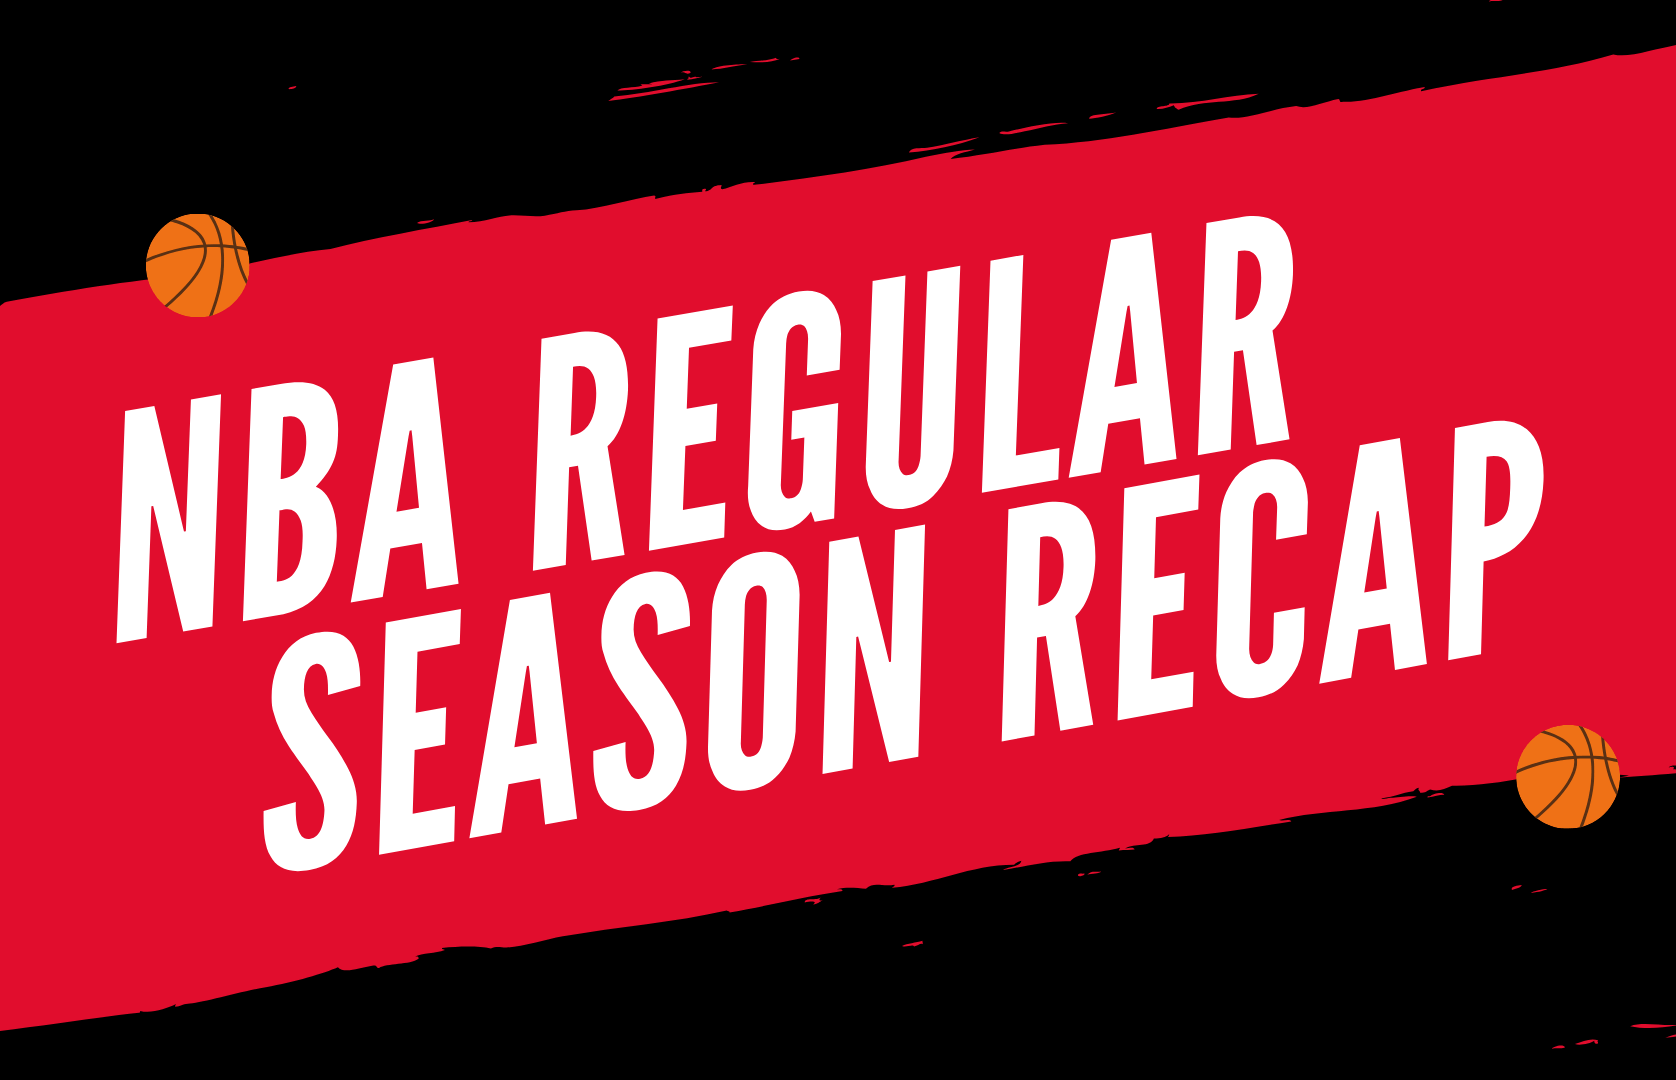 NBA Regular Season Recap